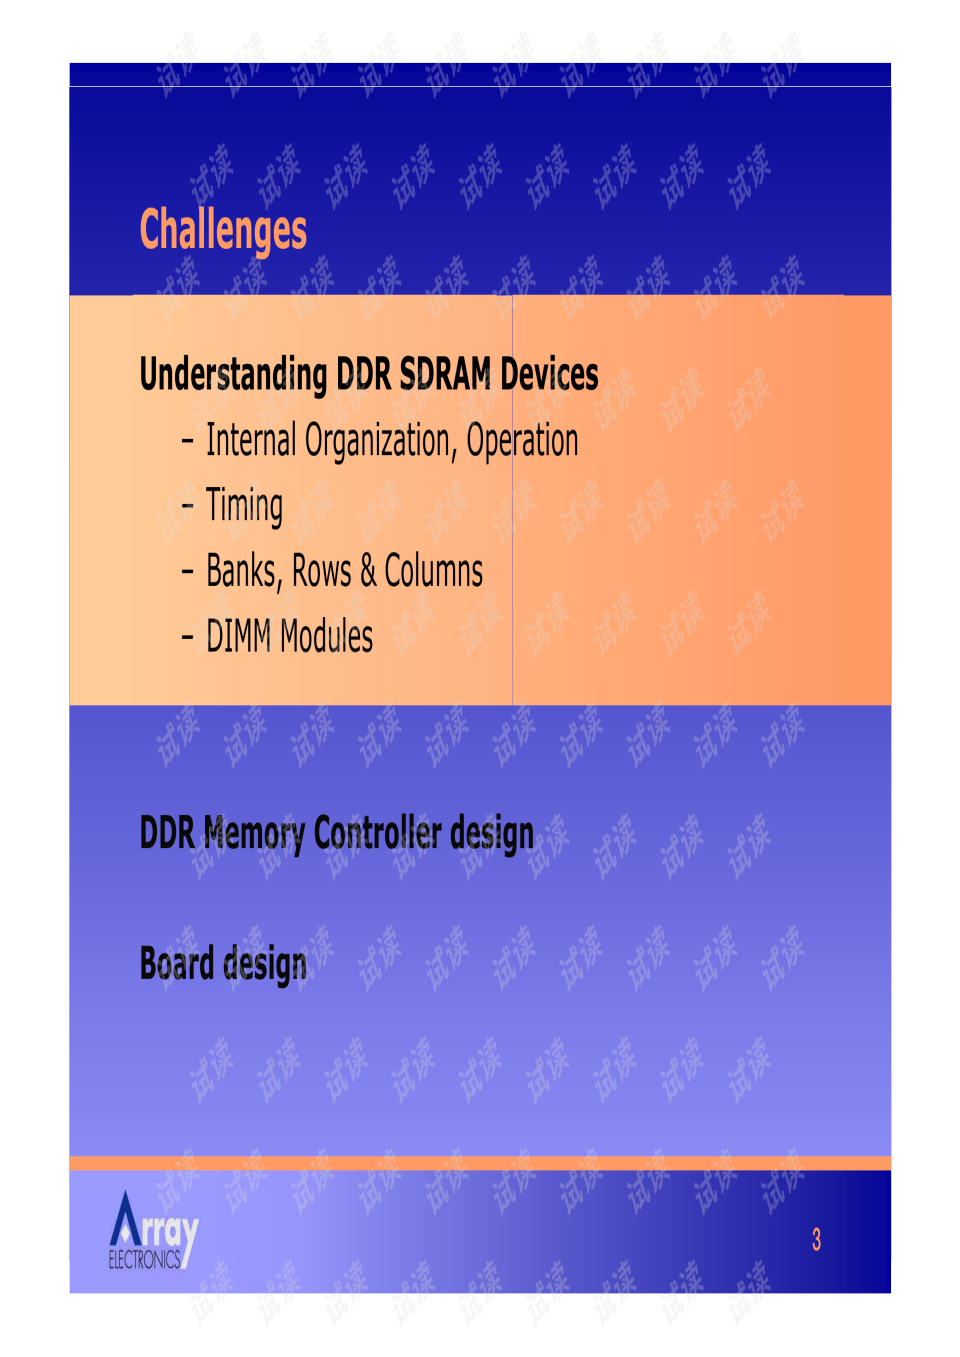 ddr timing DDR时序深度解析：性能关键因素及应用指南  第7张